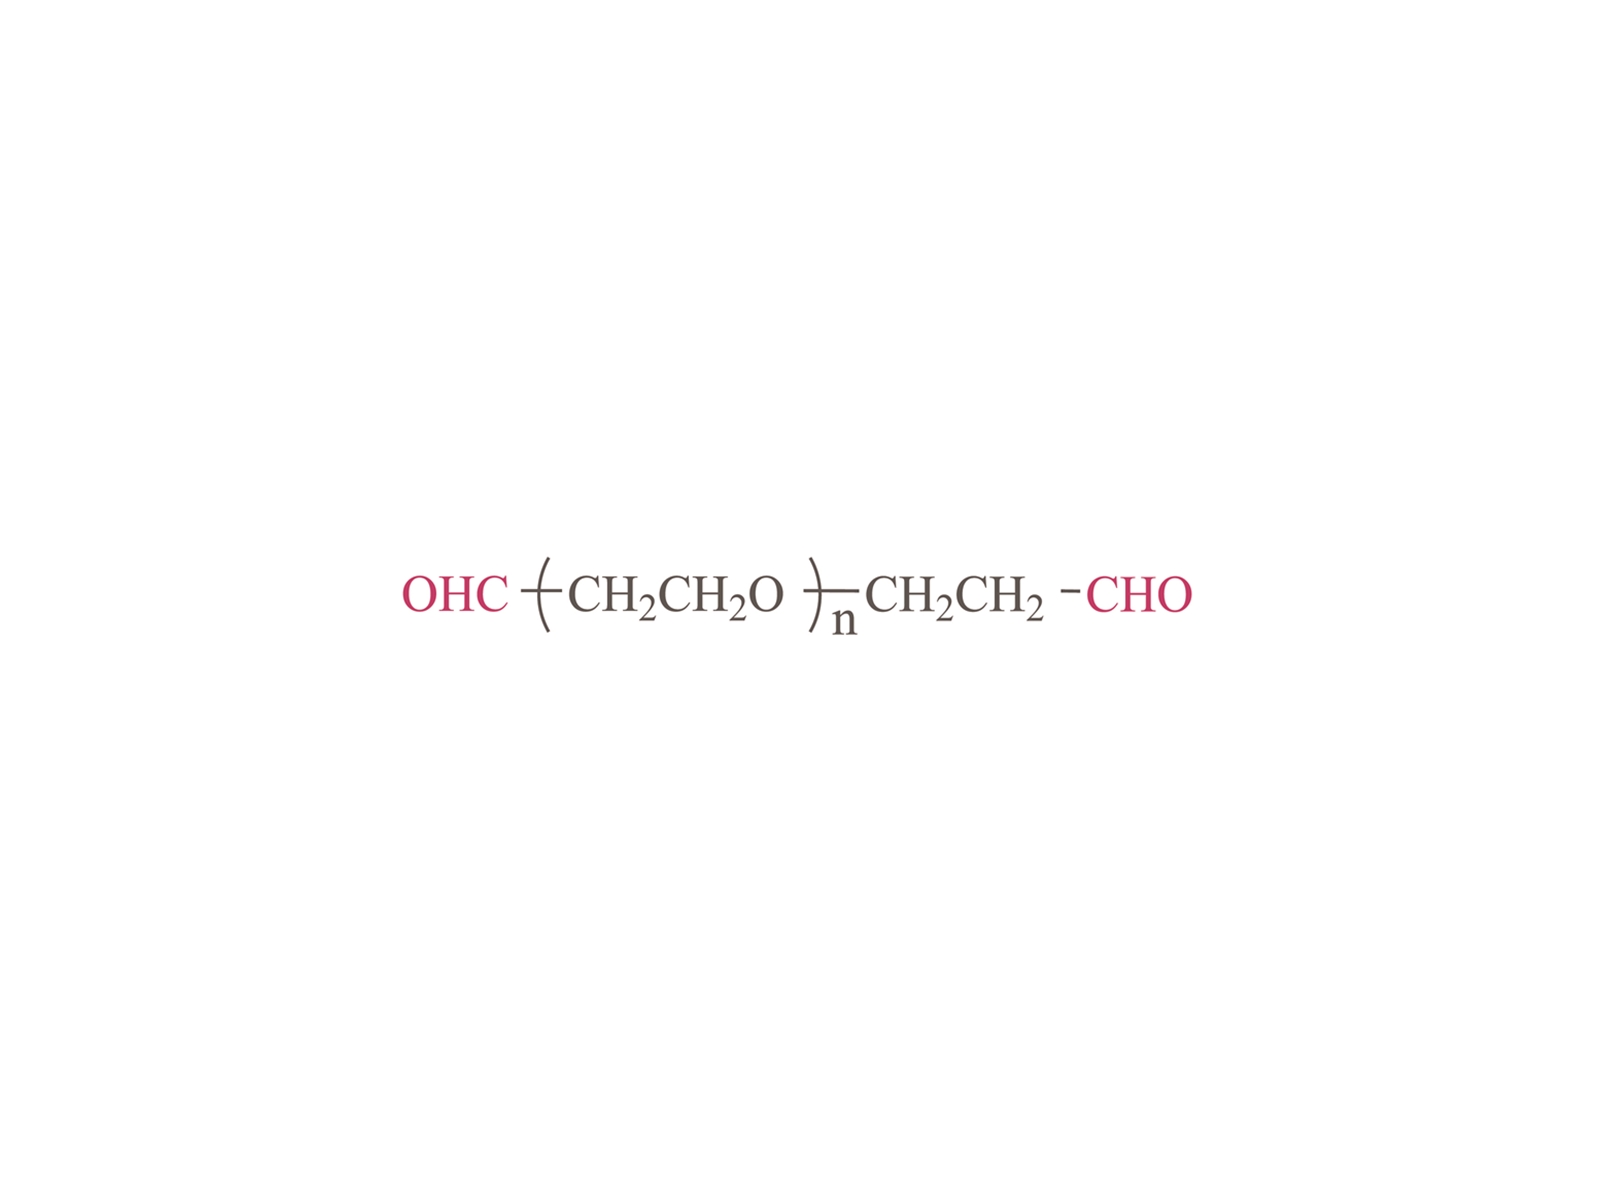 α,ω-Diformyl poly(ethylene glycol) [OHC-PEG-CHO]